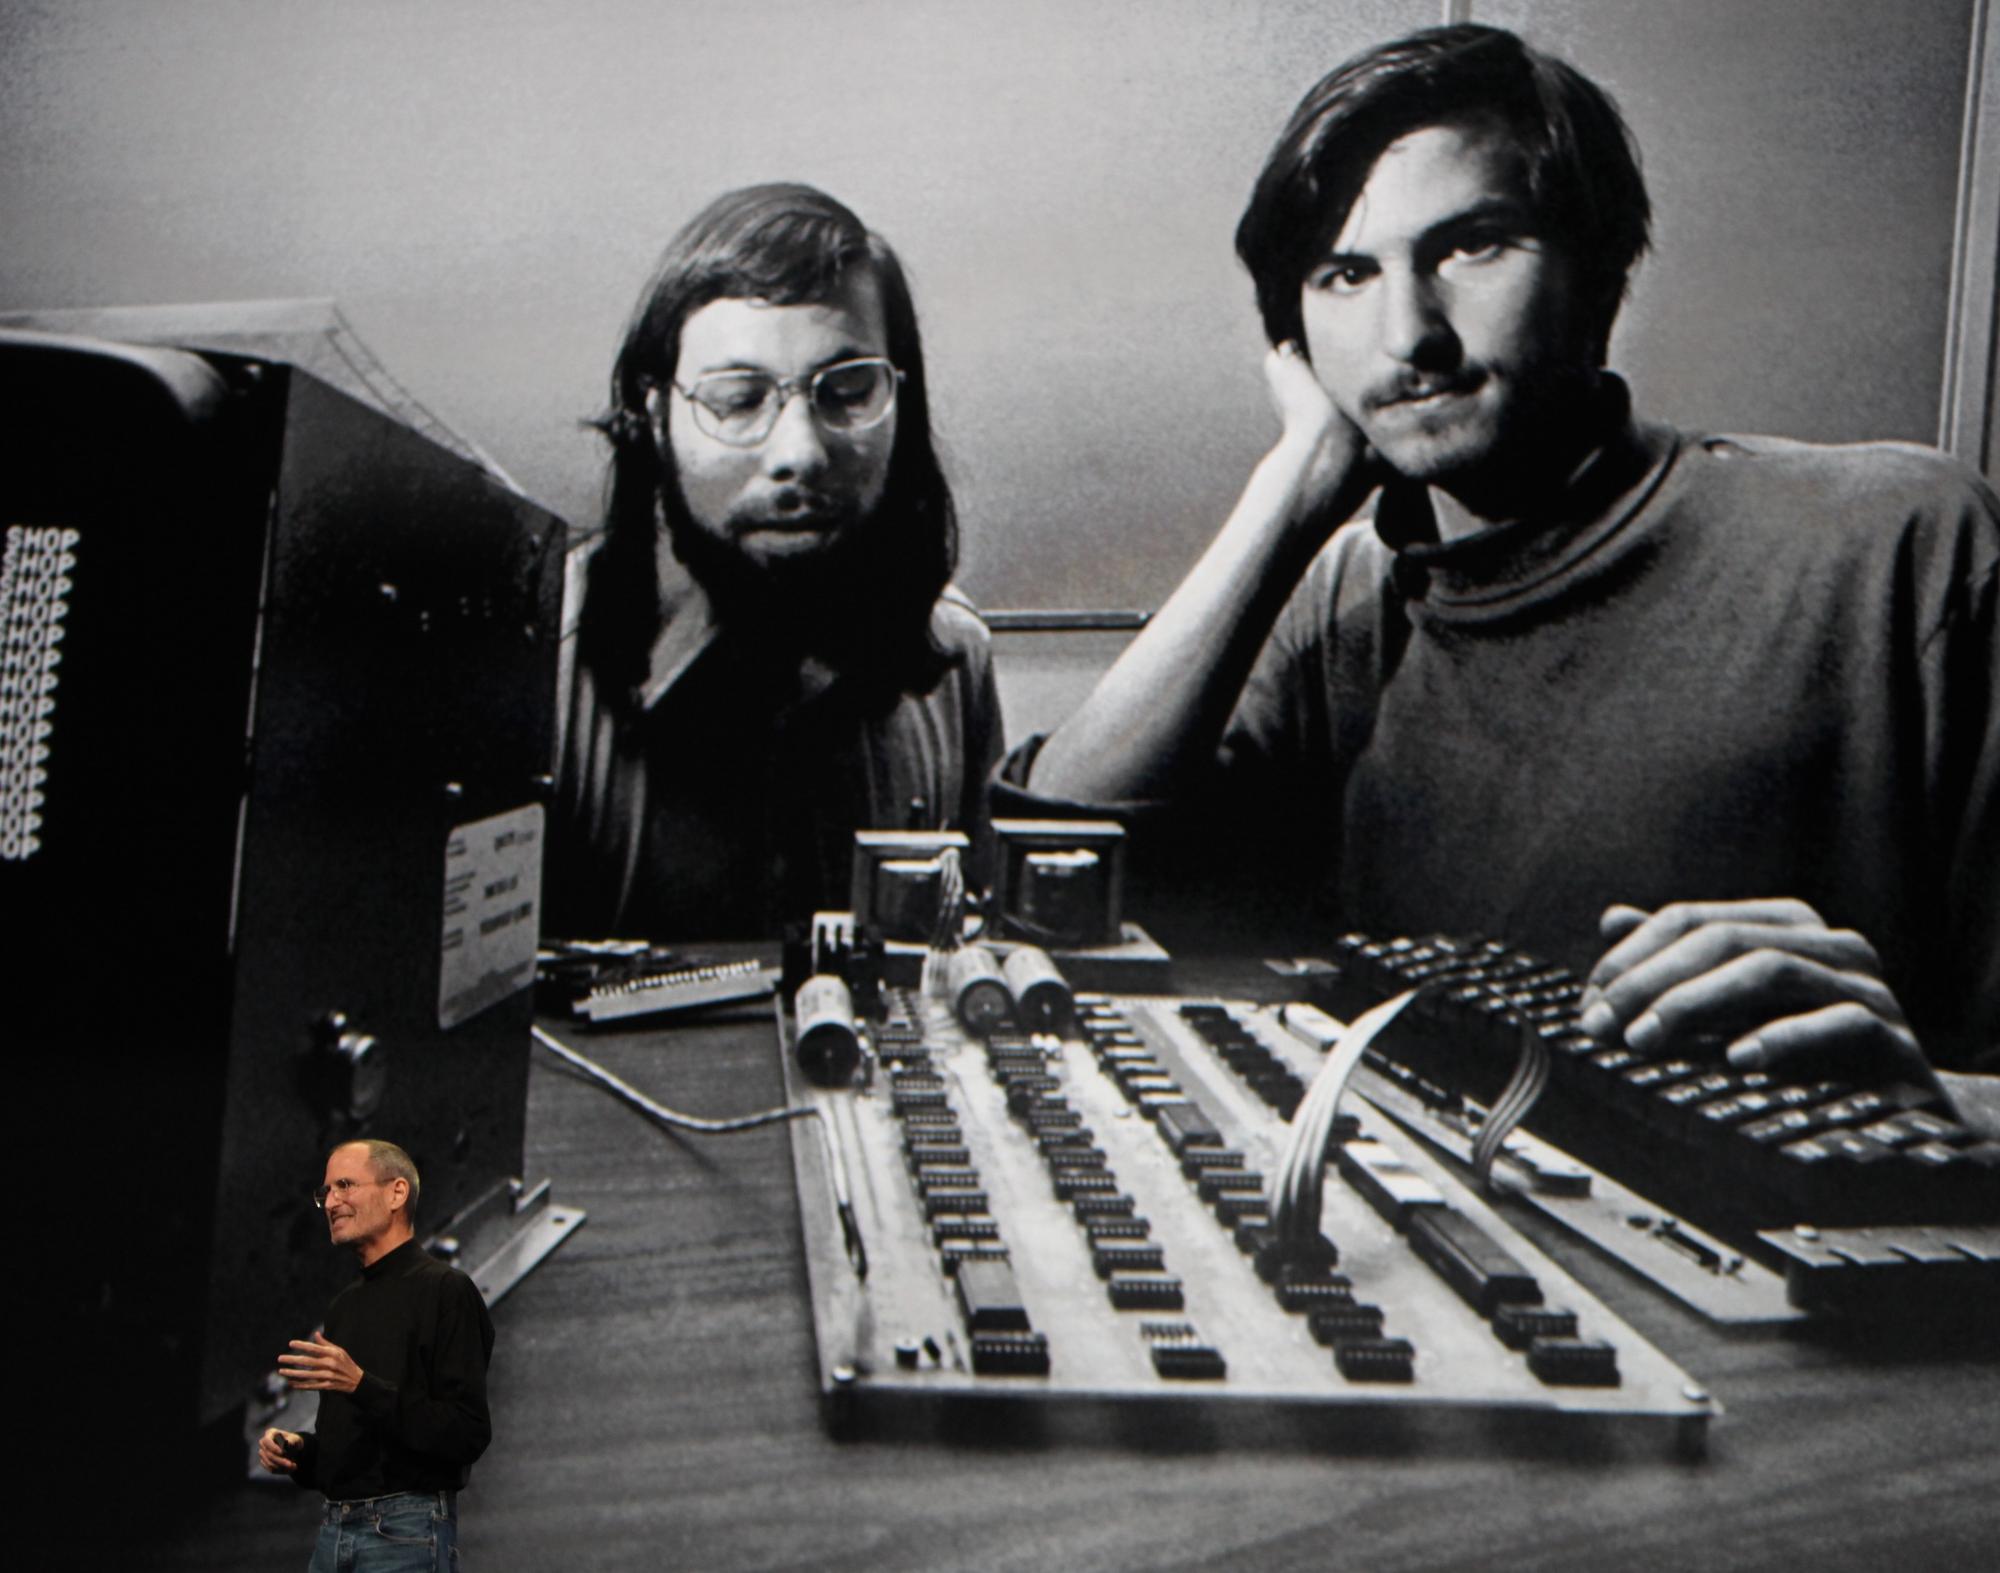 En 1976, Steve Jobs et Steve Wozniak présentent le premier ordinateur Apple: un circuit imprimé. [REUTERS - Kimberly White]